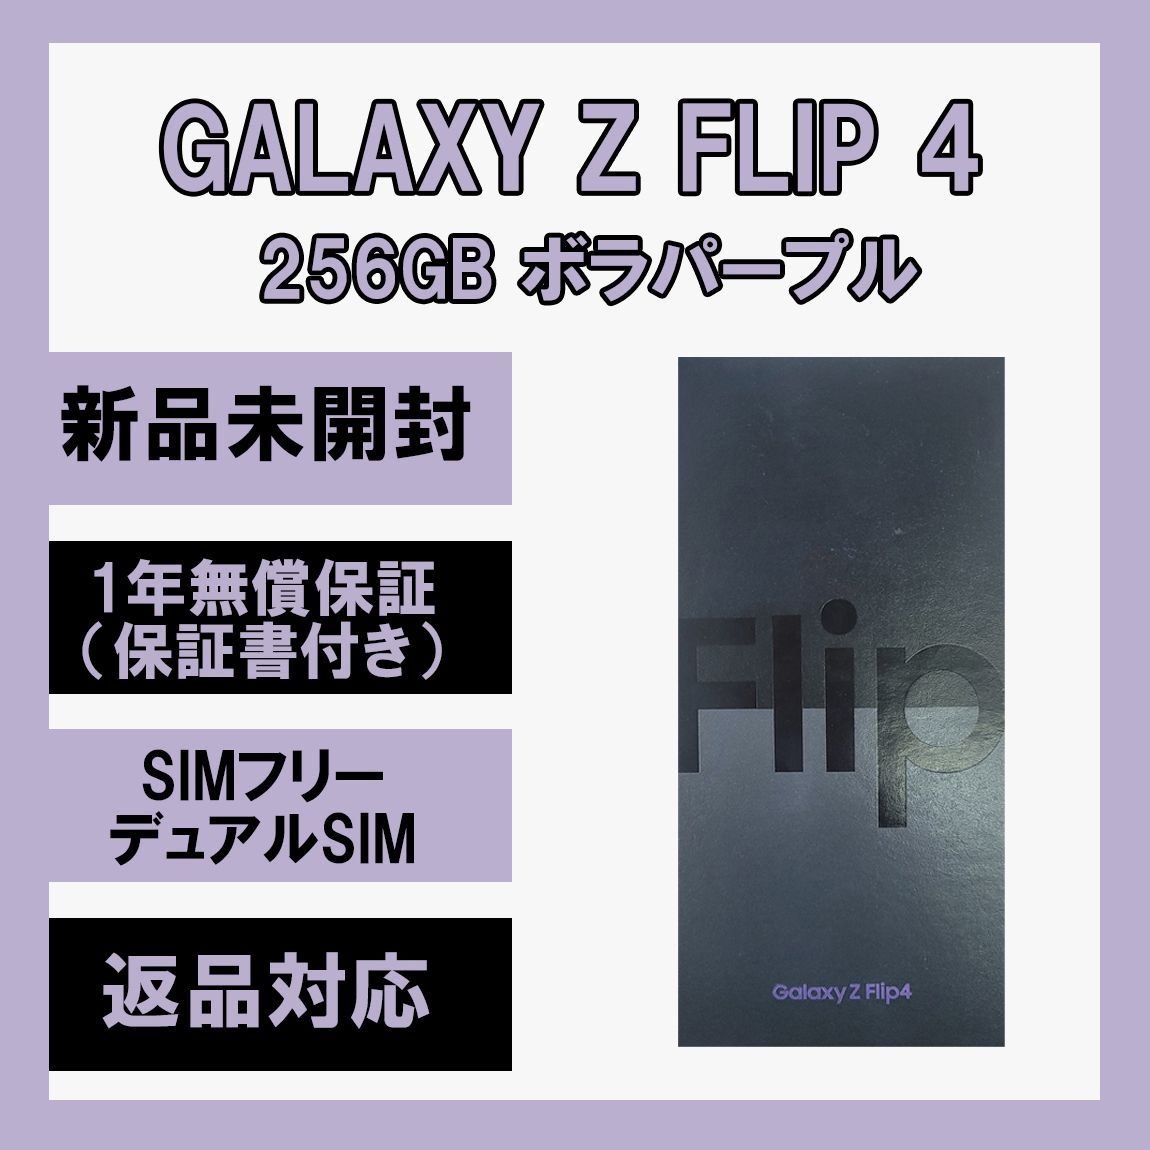 お得 Galaxy Z Flip 4 5G 256GB ボラパープル SIMフリー 90950円